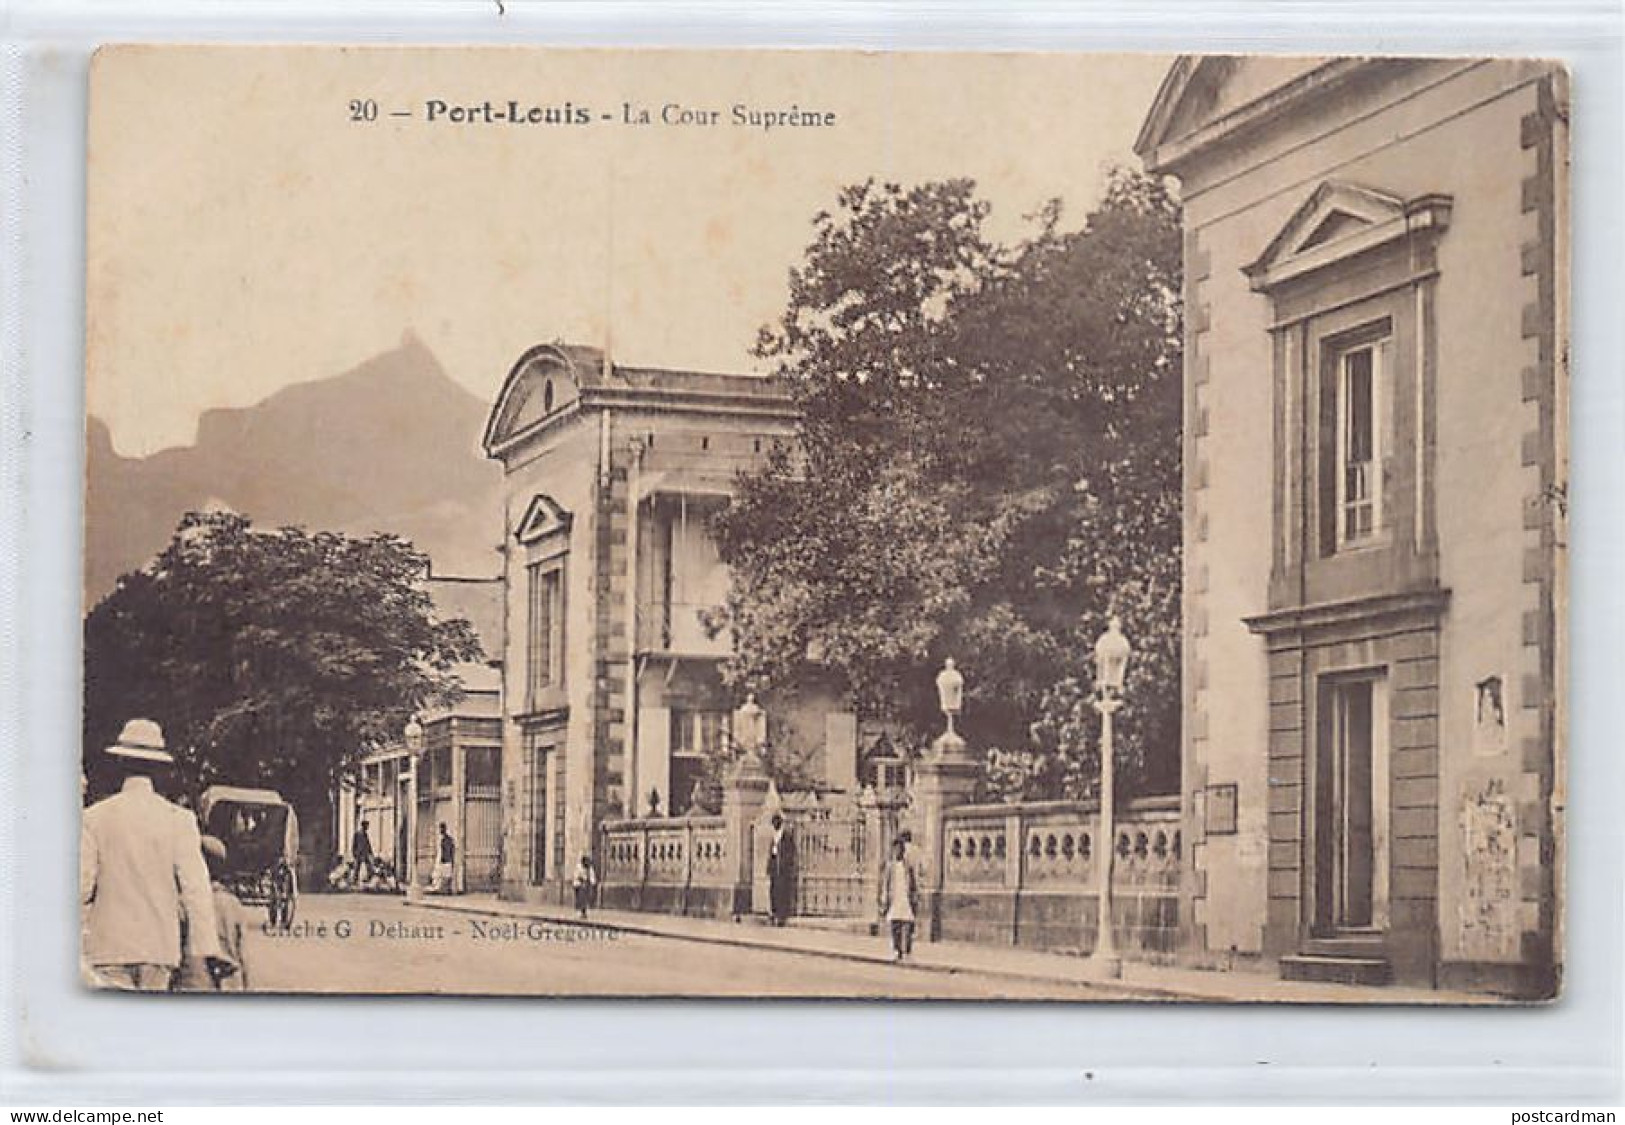 Mauritius - PORT LOUIS - La Cour Suprême - Publ. G. Dehaut - Noël Grégoire 20 - Maurice